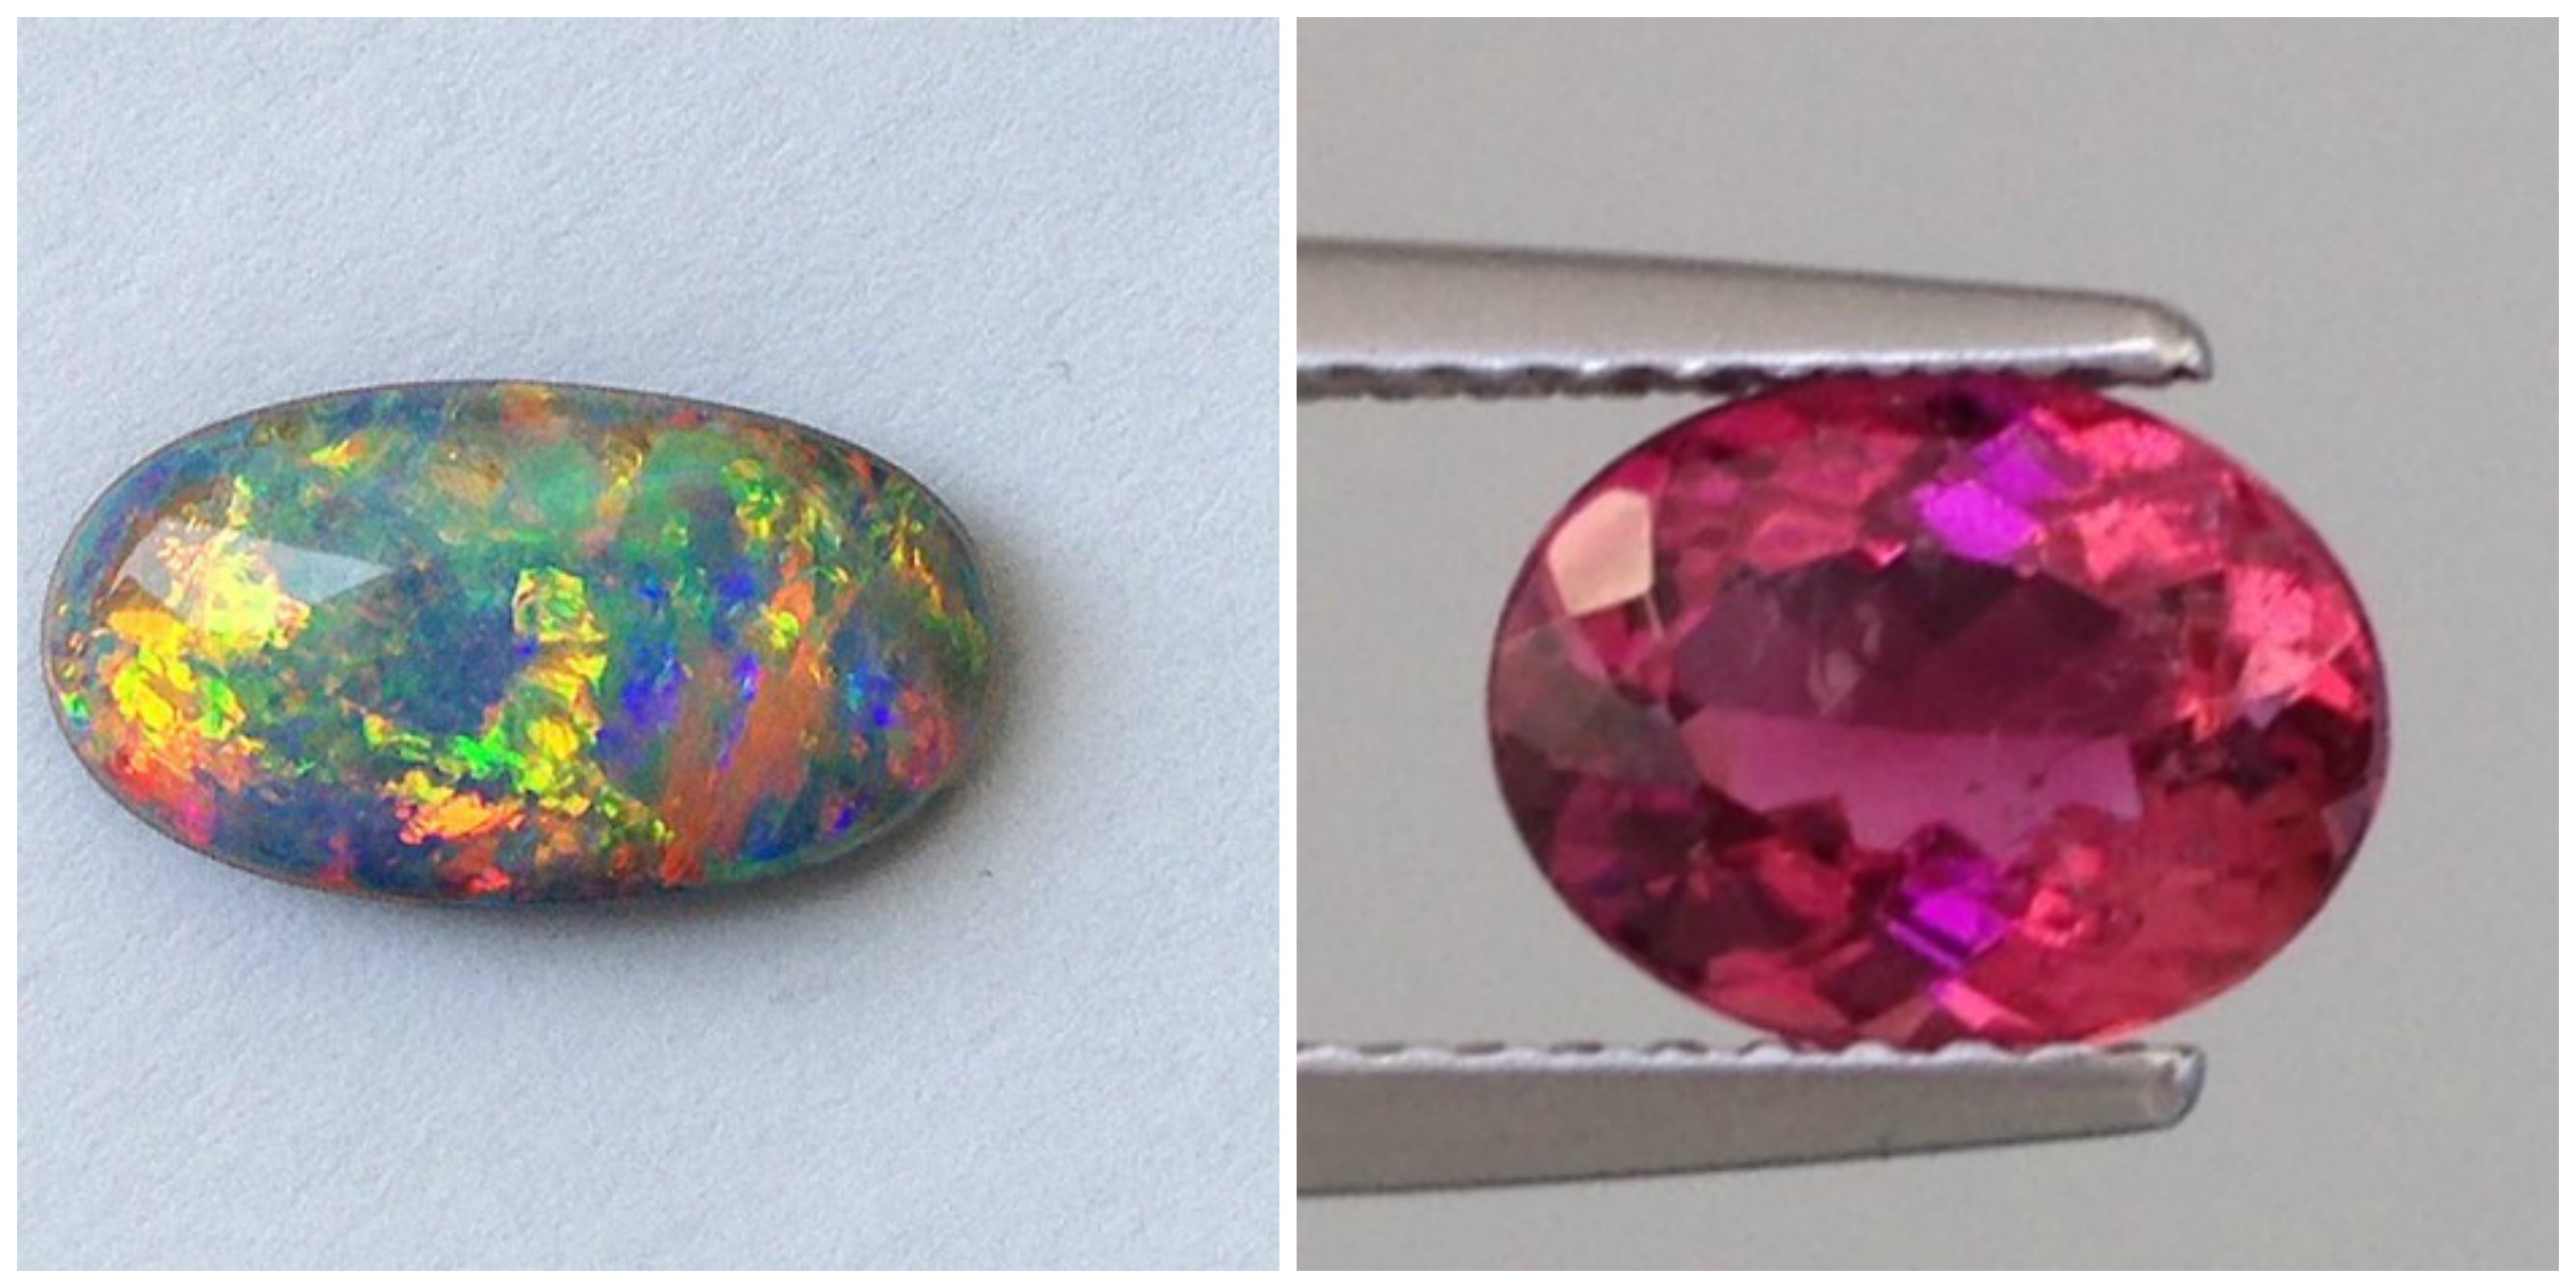 Tourmaline or Opal